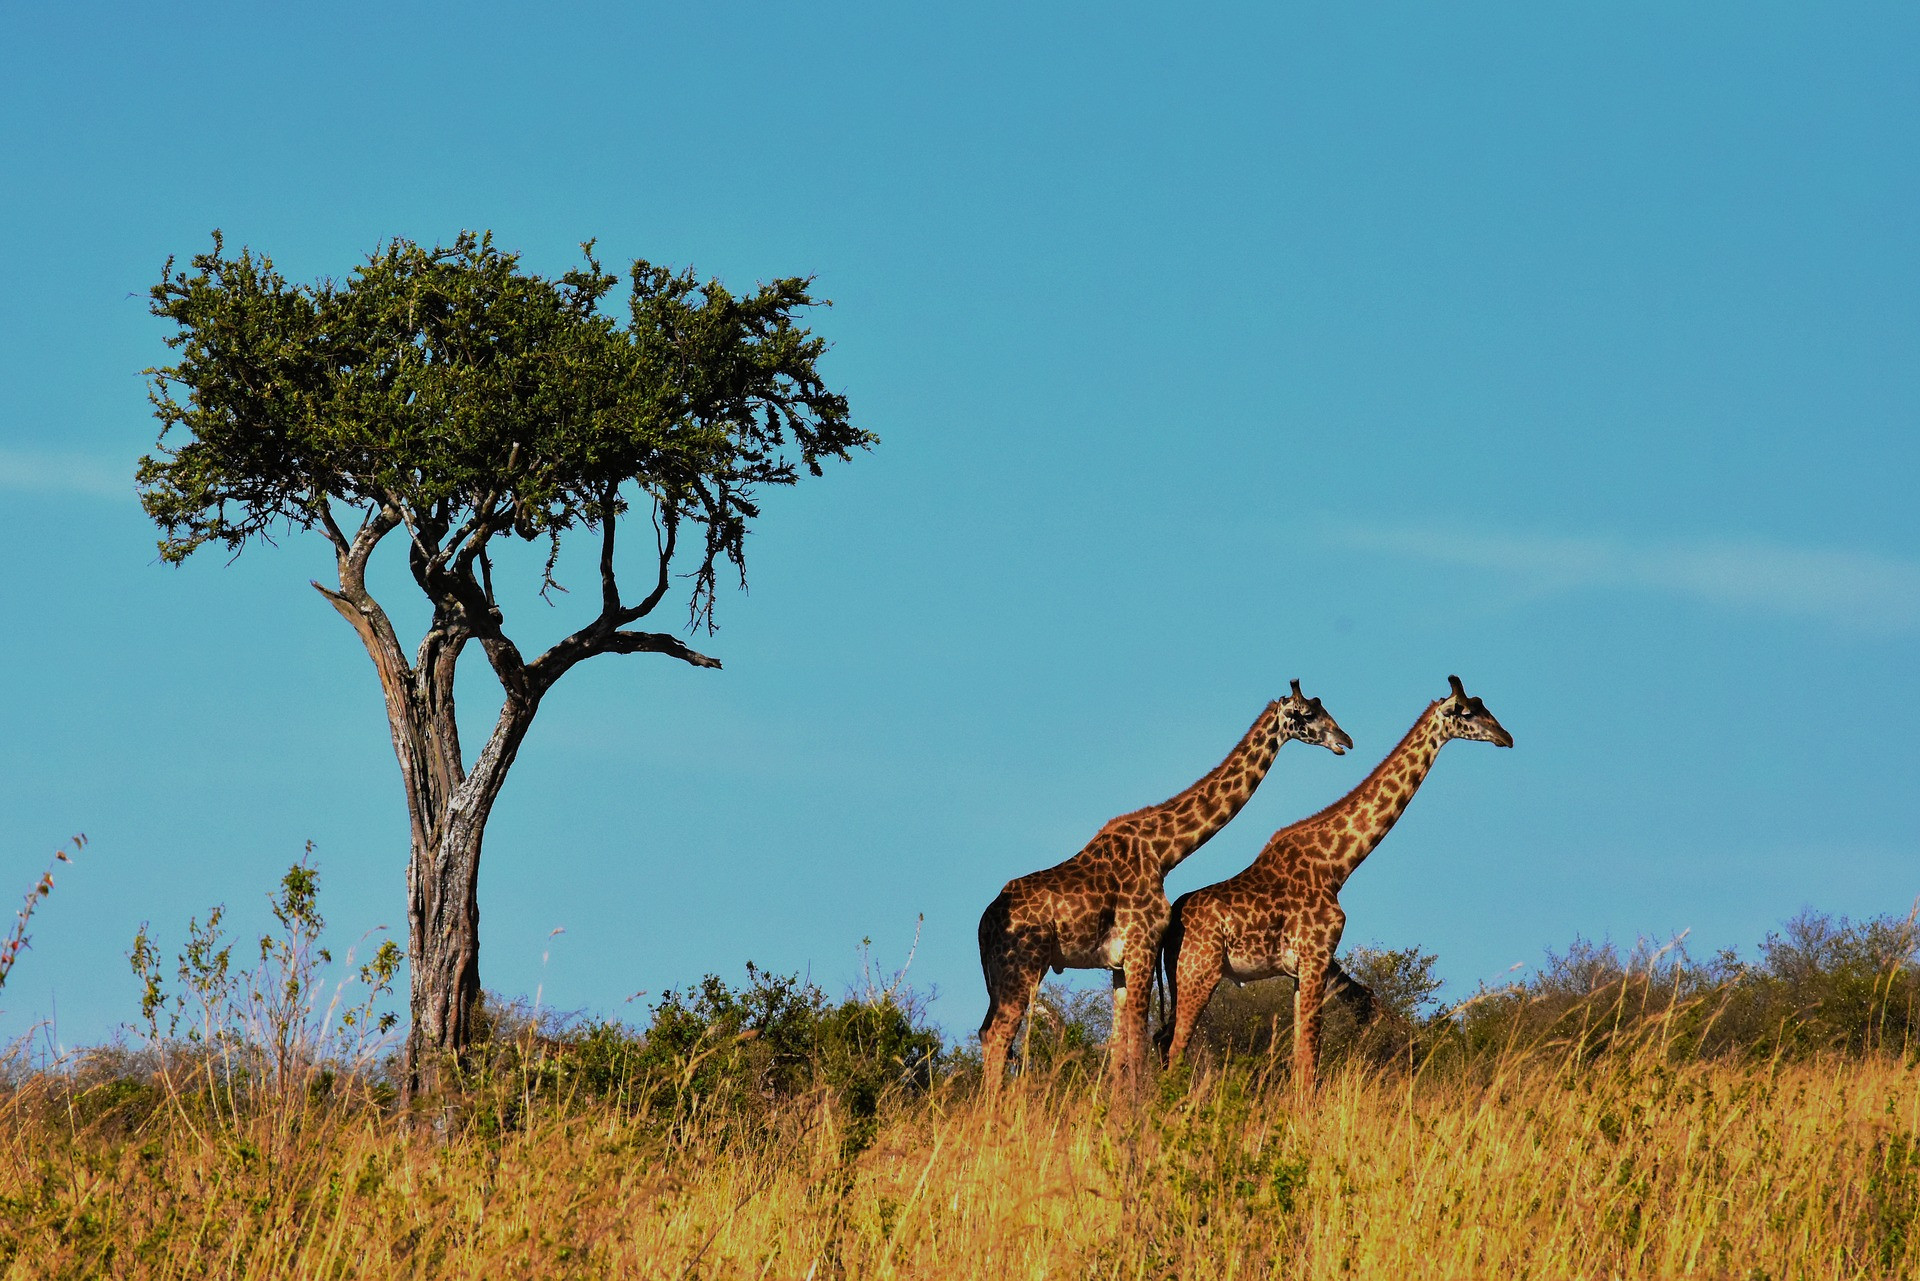 Tanzánia, Afrika. Predstavte si samých seba v otvorenom džípe, ktorý sa preháňa národným parkom Serengeti a vy ste obklopení stádami žiráf, slonov a zebier.